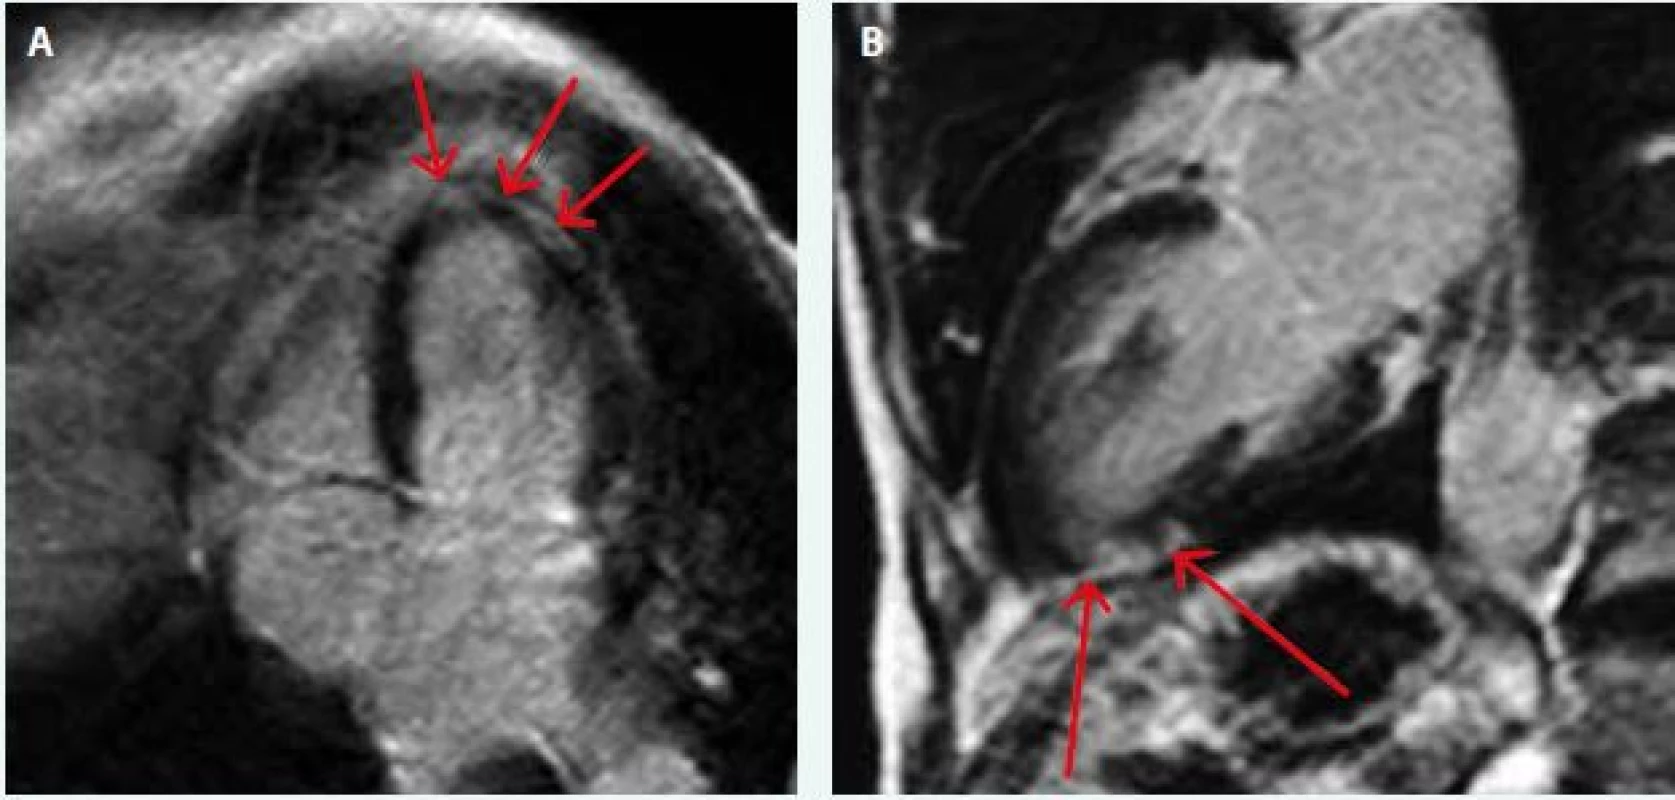 MRI nález pacienta s diagnózou akutní myokarditidy